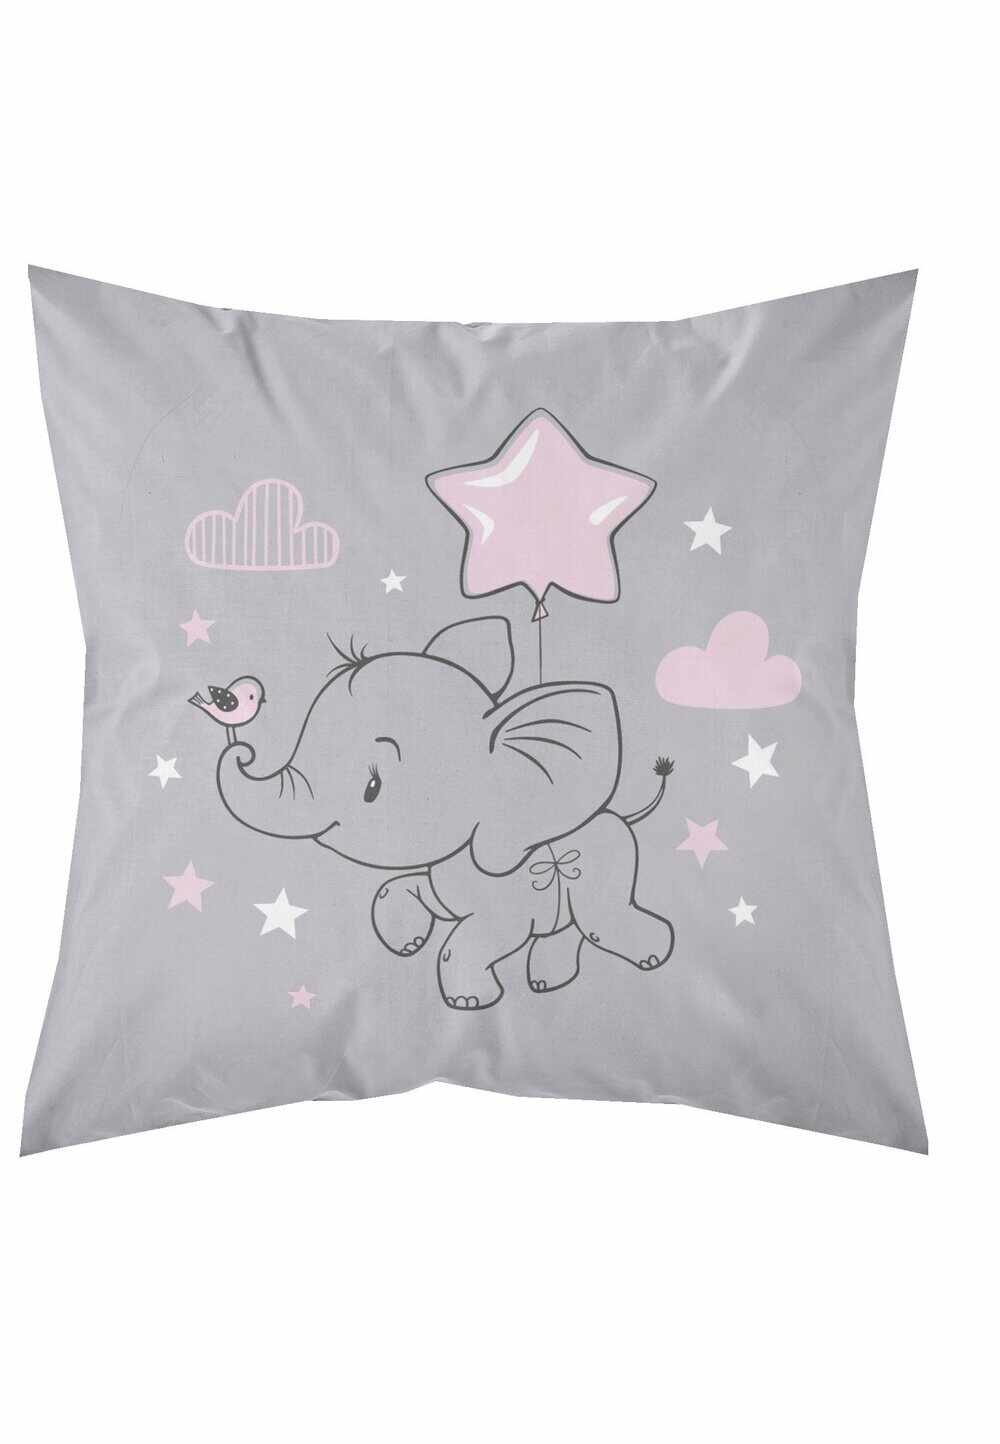 Fata perna bumbac, Little Star, elefant cu stea, roz, 40x40 cm